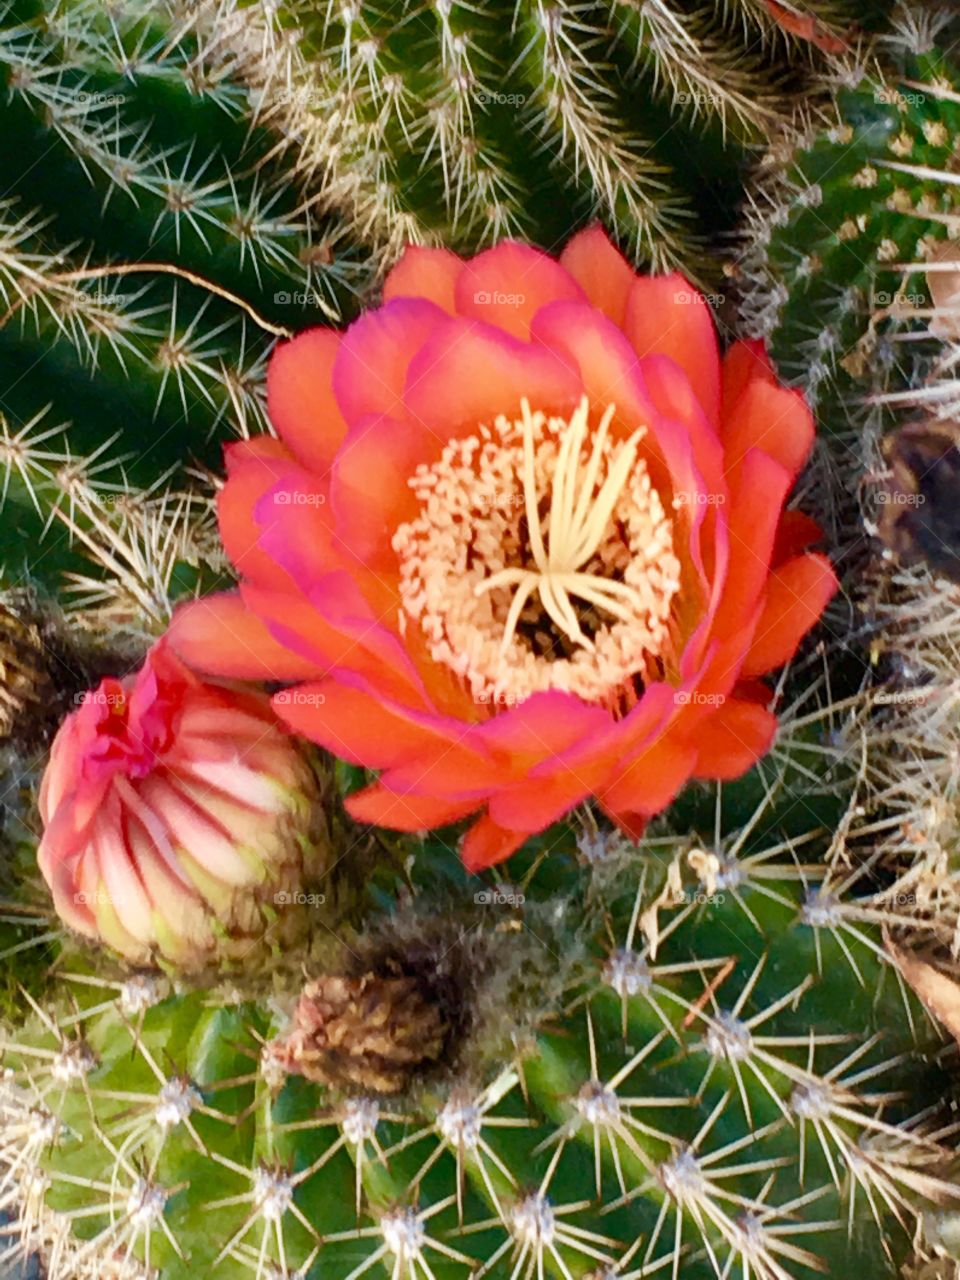  Cactus flower  